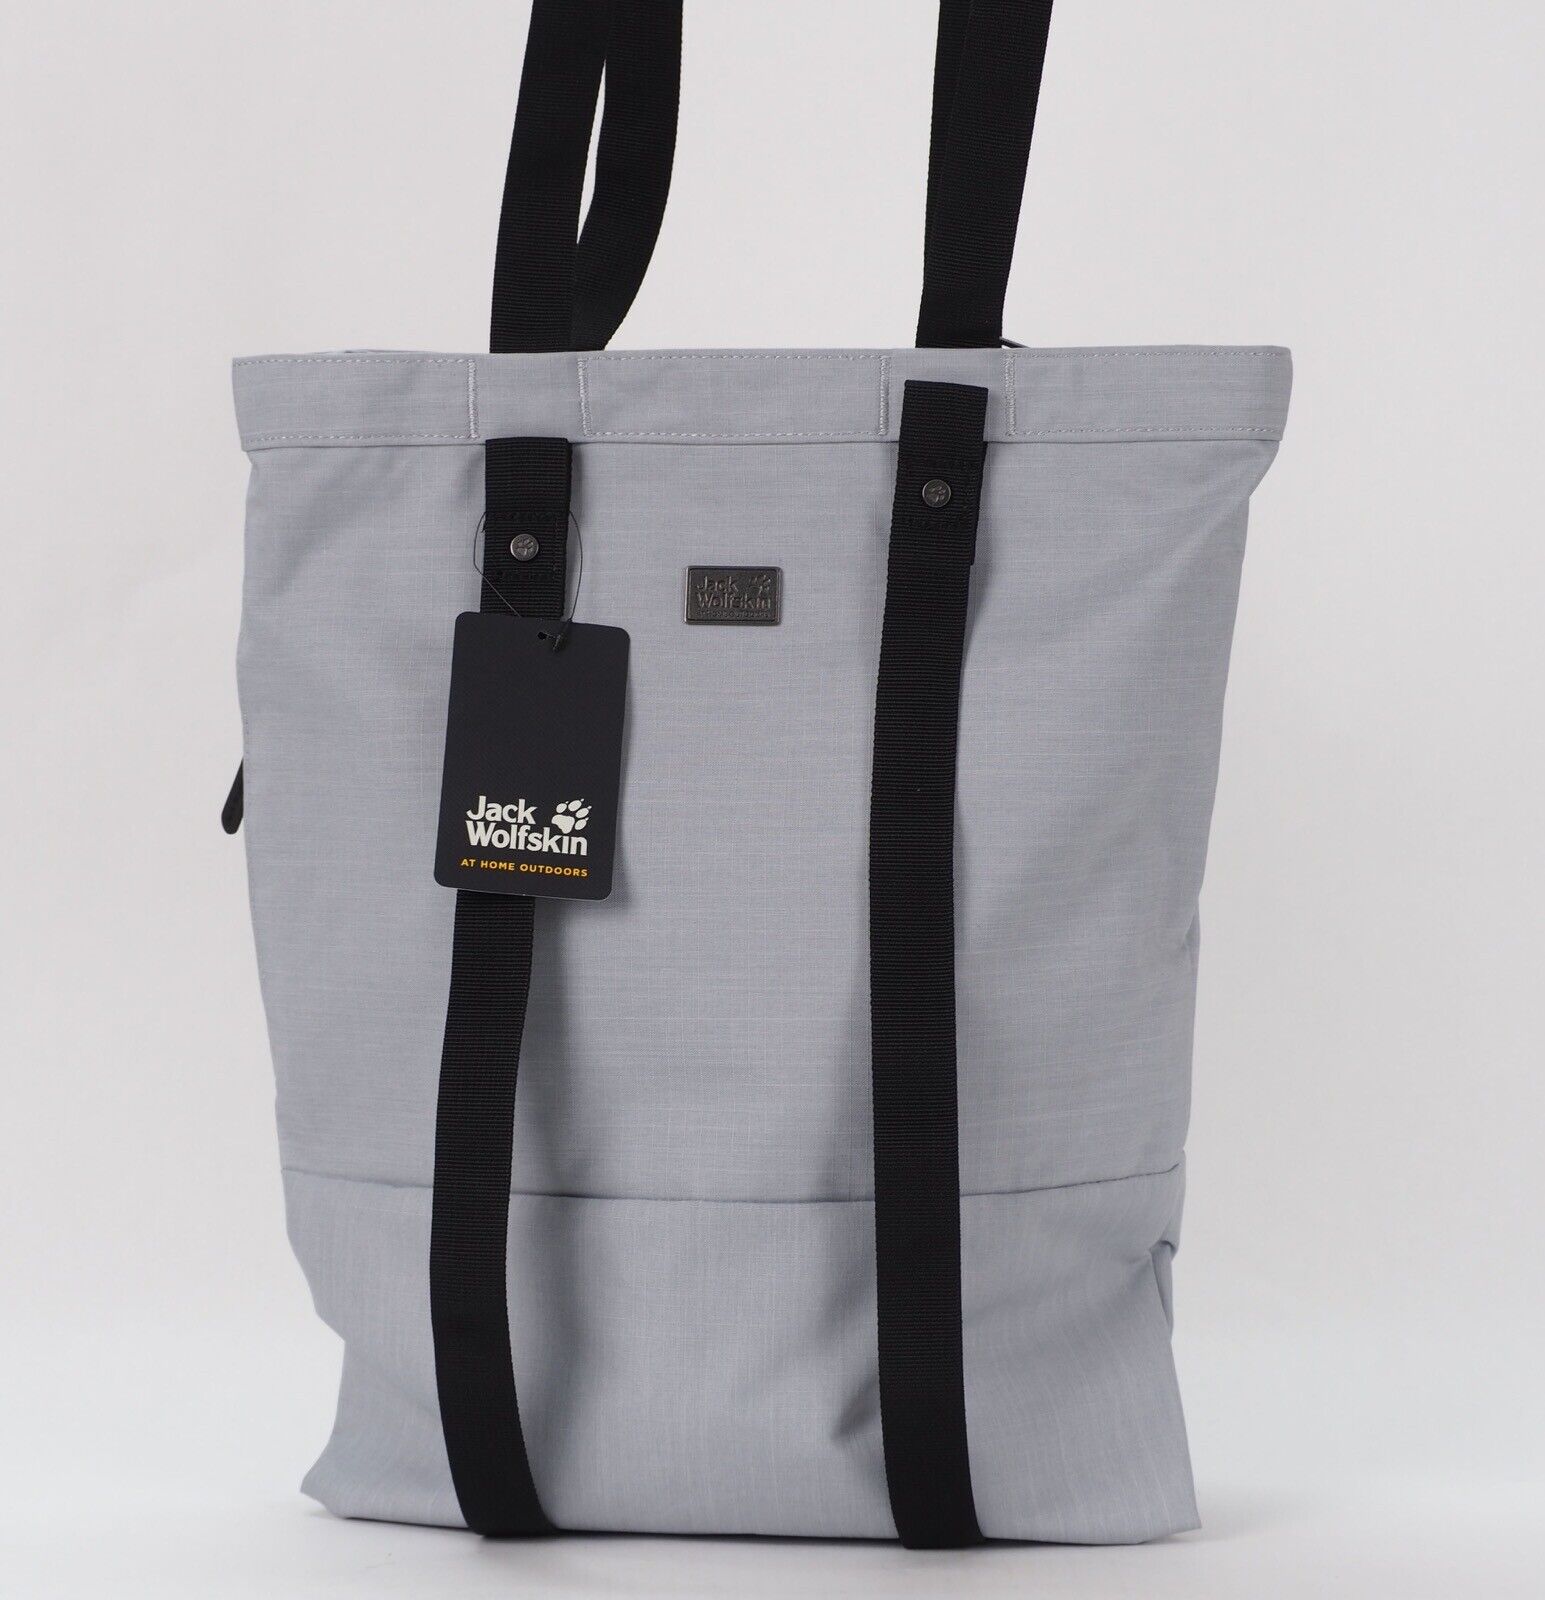 Jack Wolfskin 24/7 Blend 2009391 Slate Grey Heather Shoulder Bag / Work Backpack - London Top Style